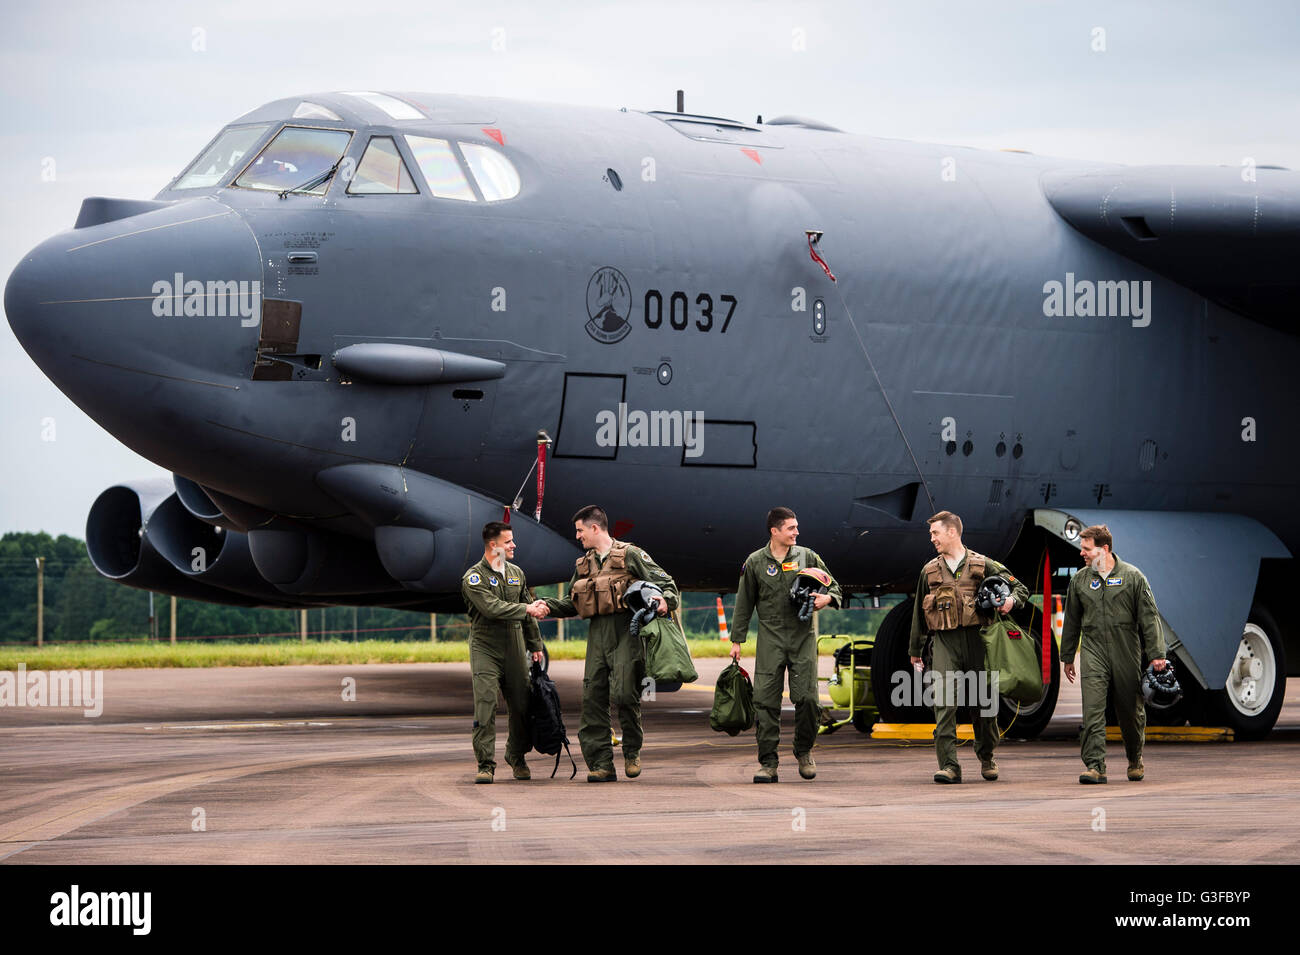 Los miembros de la tripulación de la Fuerza Aérea de los Estados Unidos (USAF) Boeing B-52H Stratofortress bombardero estratégico de la 23D Escuadrón de bombas, estacionado en la base aérea de Fairford en RAF pan, como parte de la US Air Force Global Strike Command para implementación de Fairford, para ejercicios de entrenamiento militar. Foto de stock